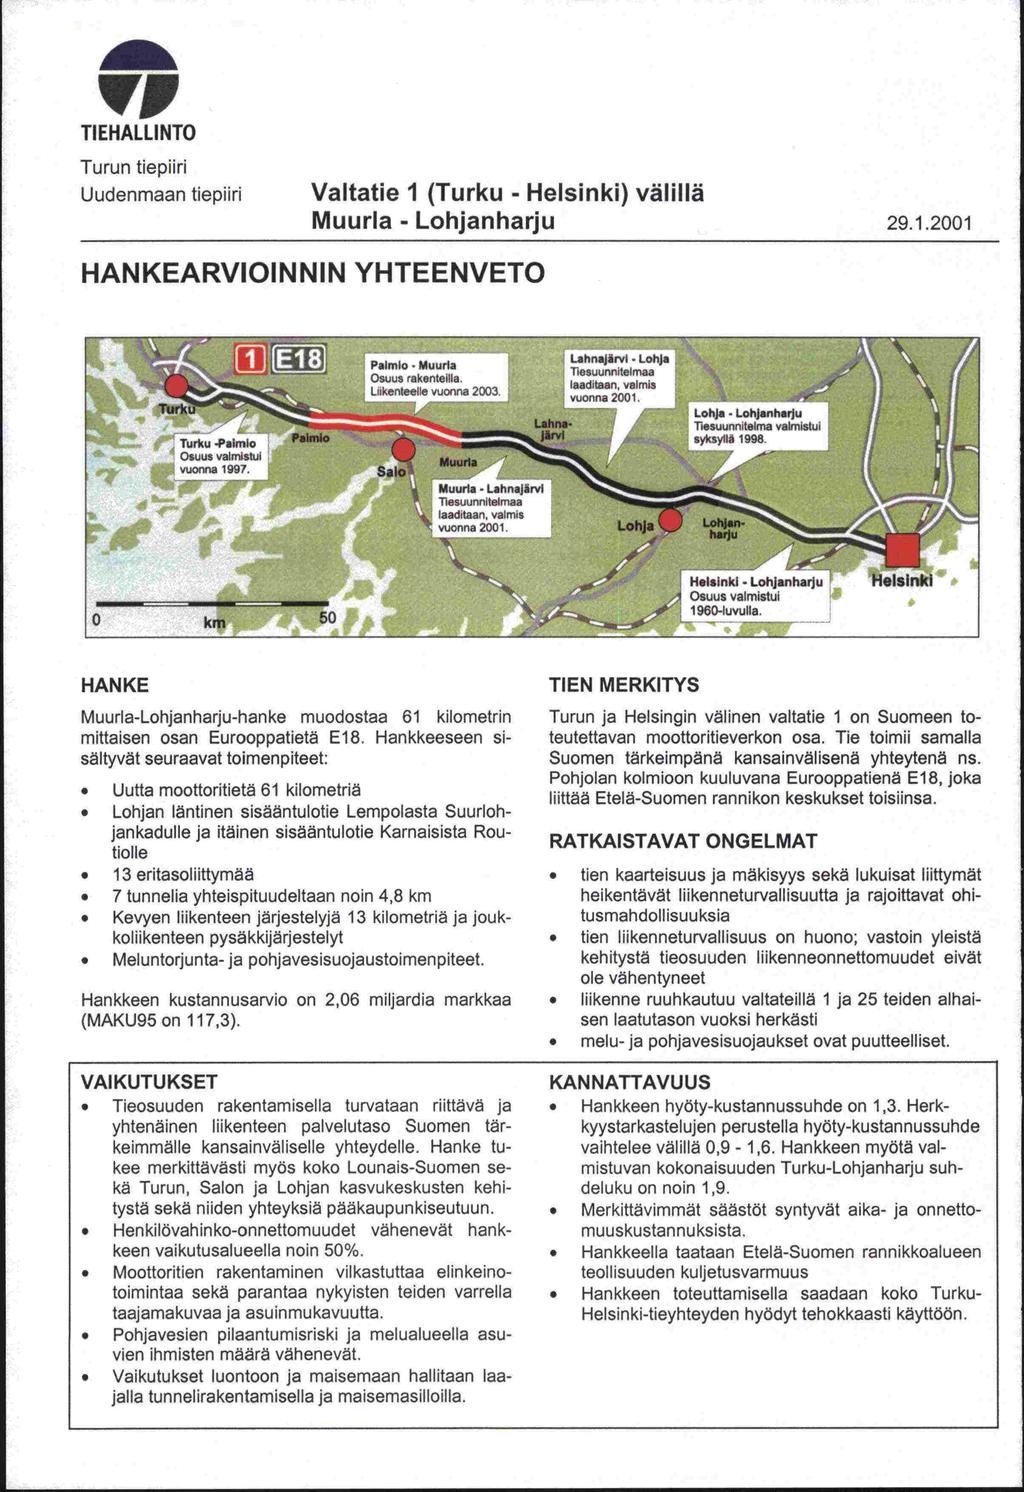 'VI TIEHALLINTO Turun tiepiiri Uudenmaan tiepiiri Valtatie 1 (Turku - Helsinki) välillä Muurla - Lohjanharju 29.1.2001 HANKEARVIOINNIN YHTEENVETO Turlw -PairnIo - Osuus valmistui vuonna 1997.